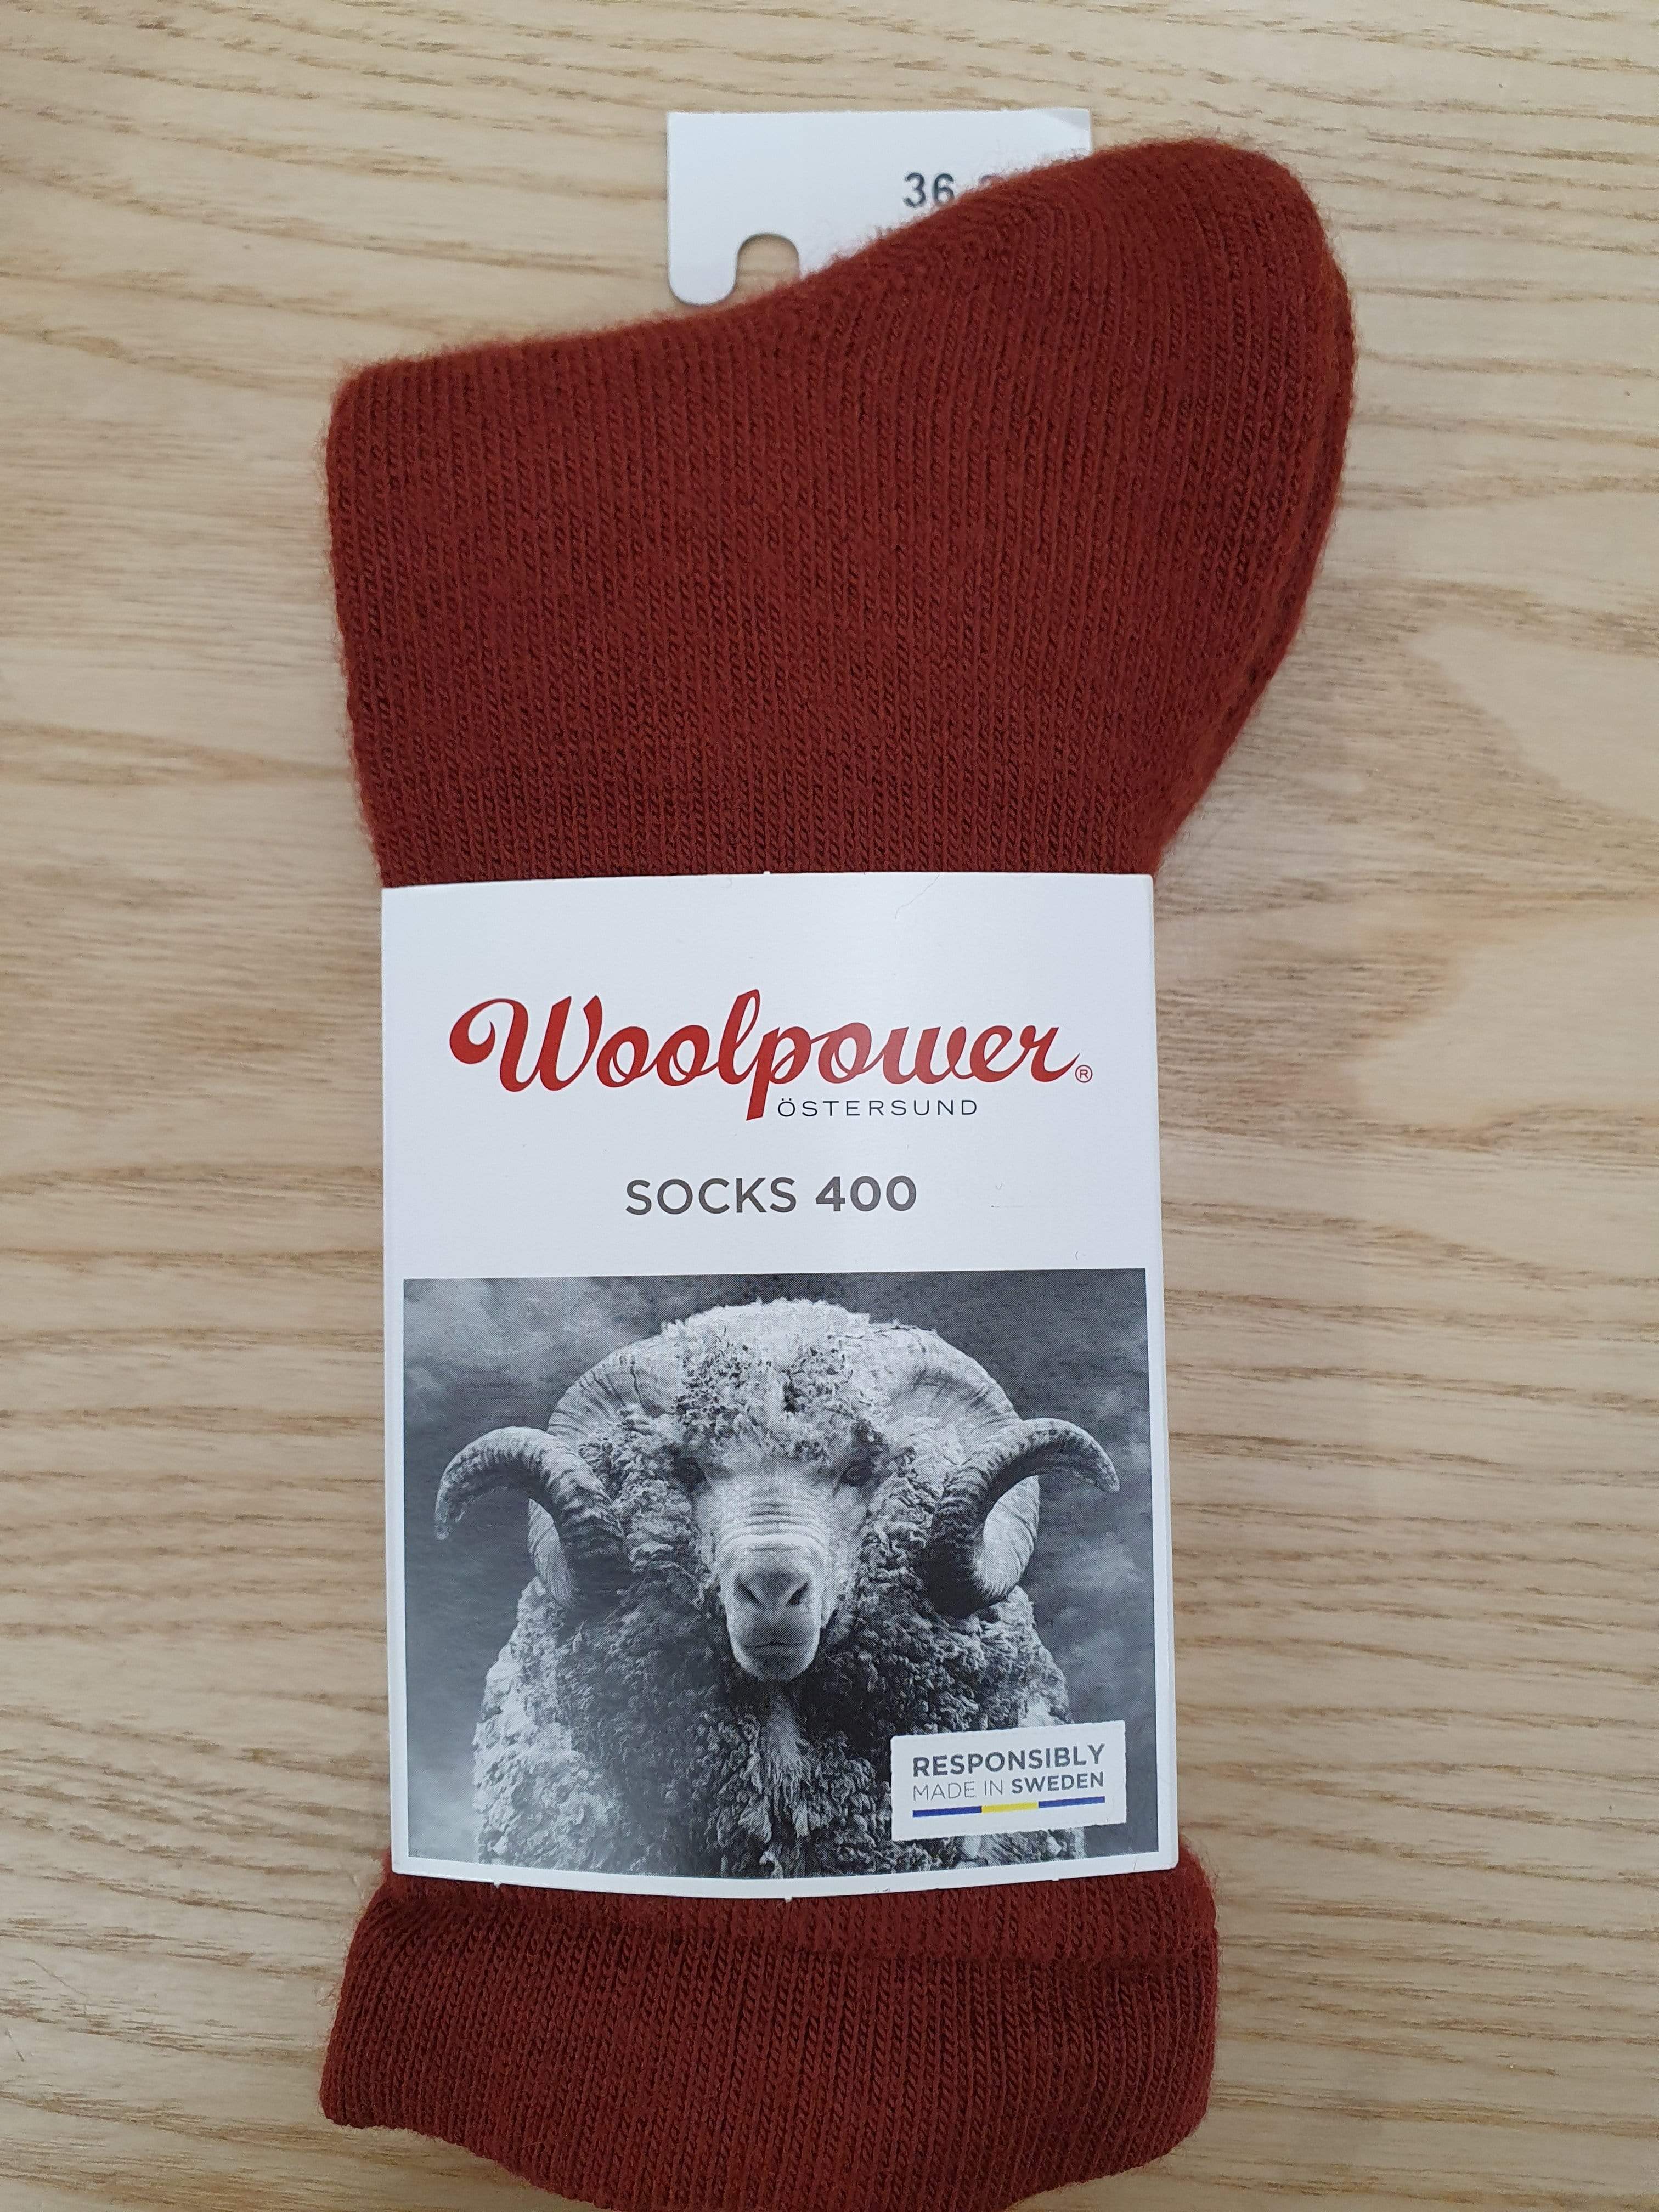 Woolpower Socks 36-39 EU / Rust Red Woolpower Classic 400g Socks Rust Red